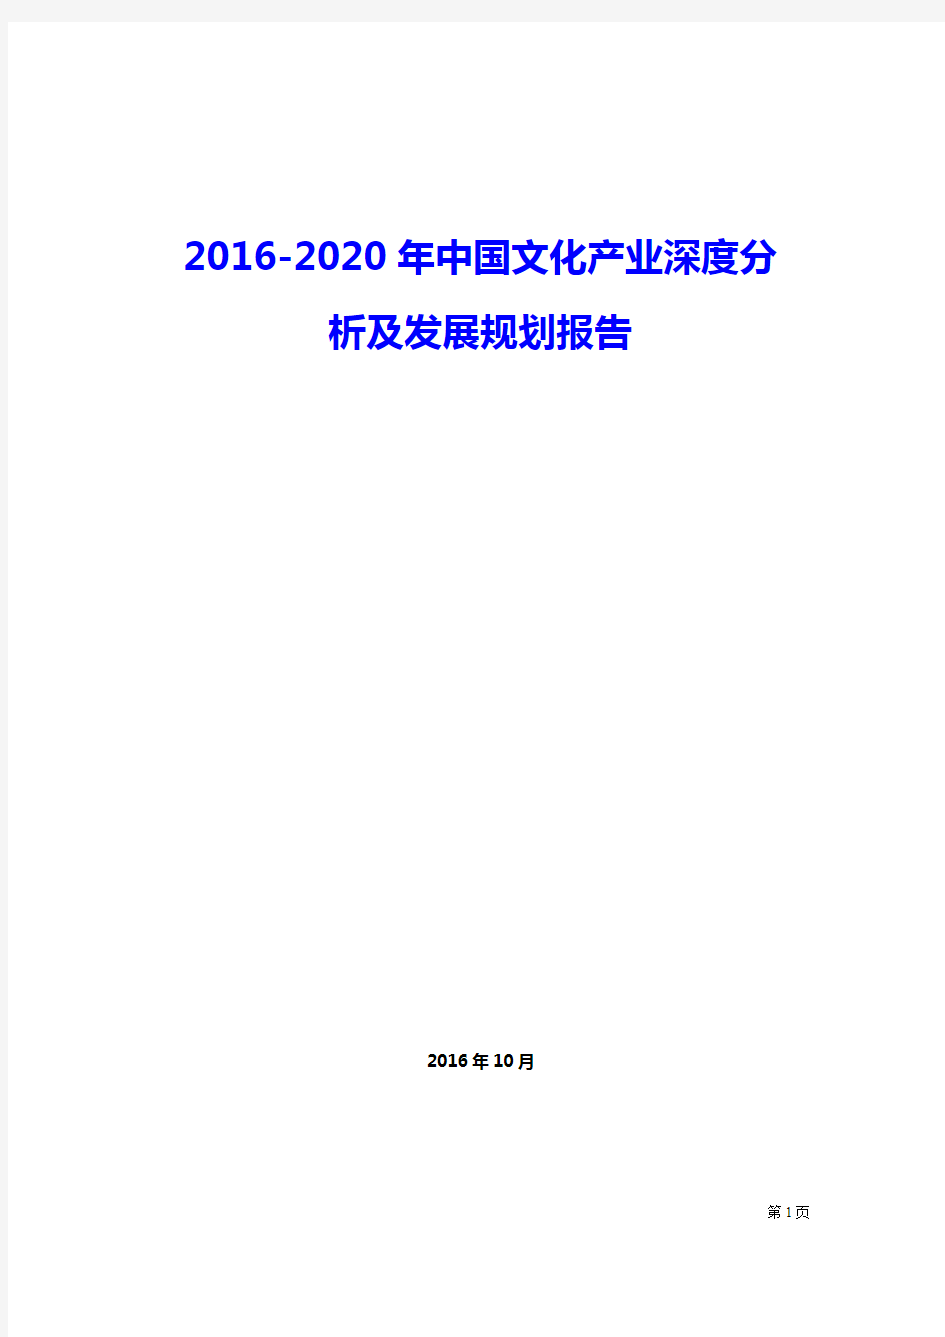 2016-2020最新年中国文化产业深度分析及发展规划精品报告